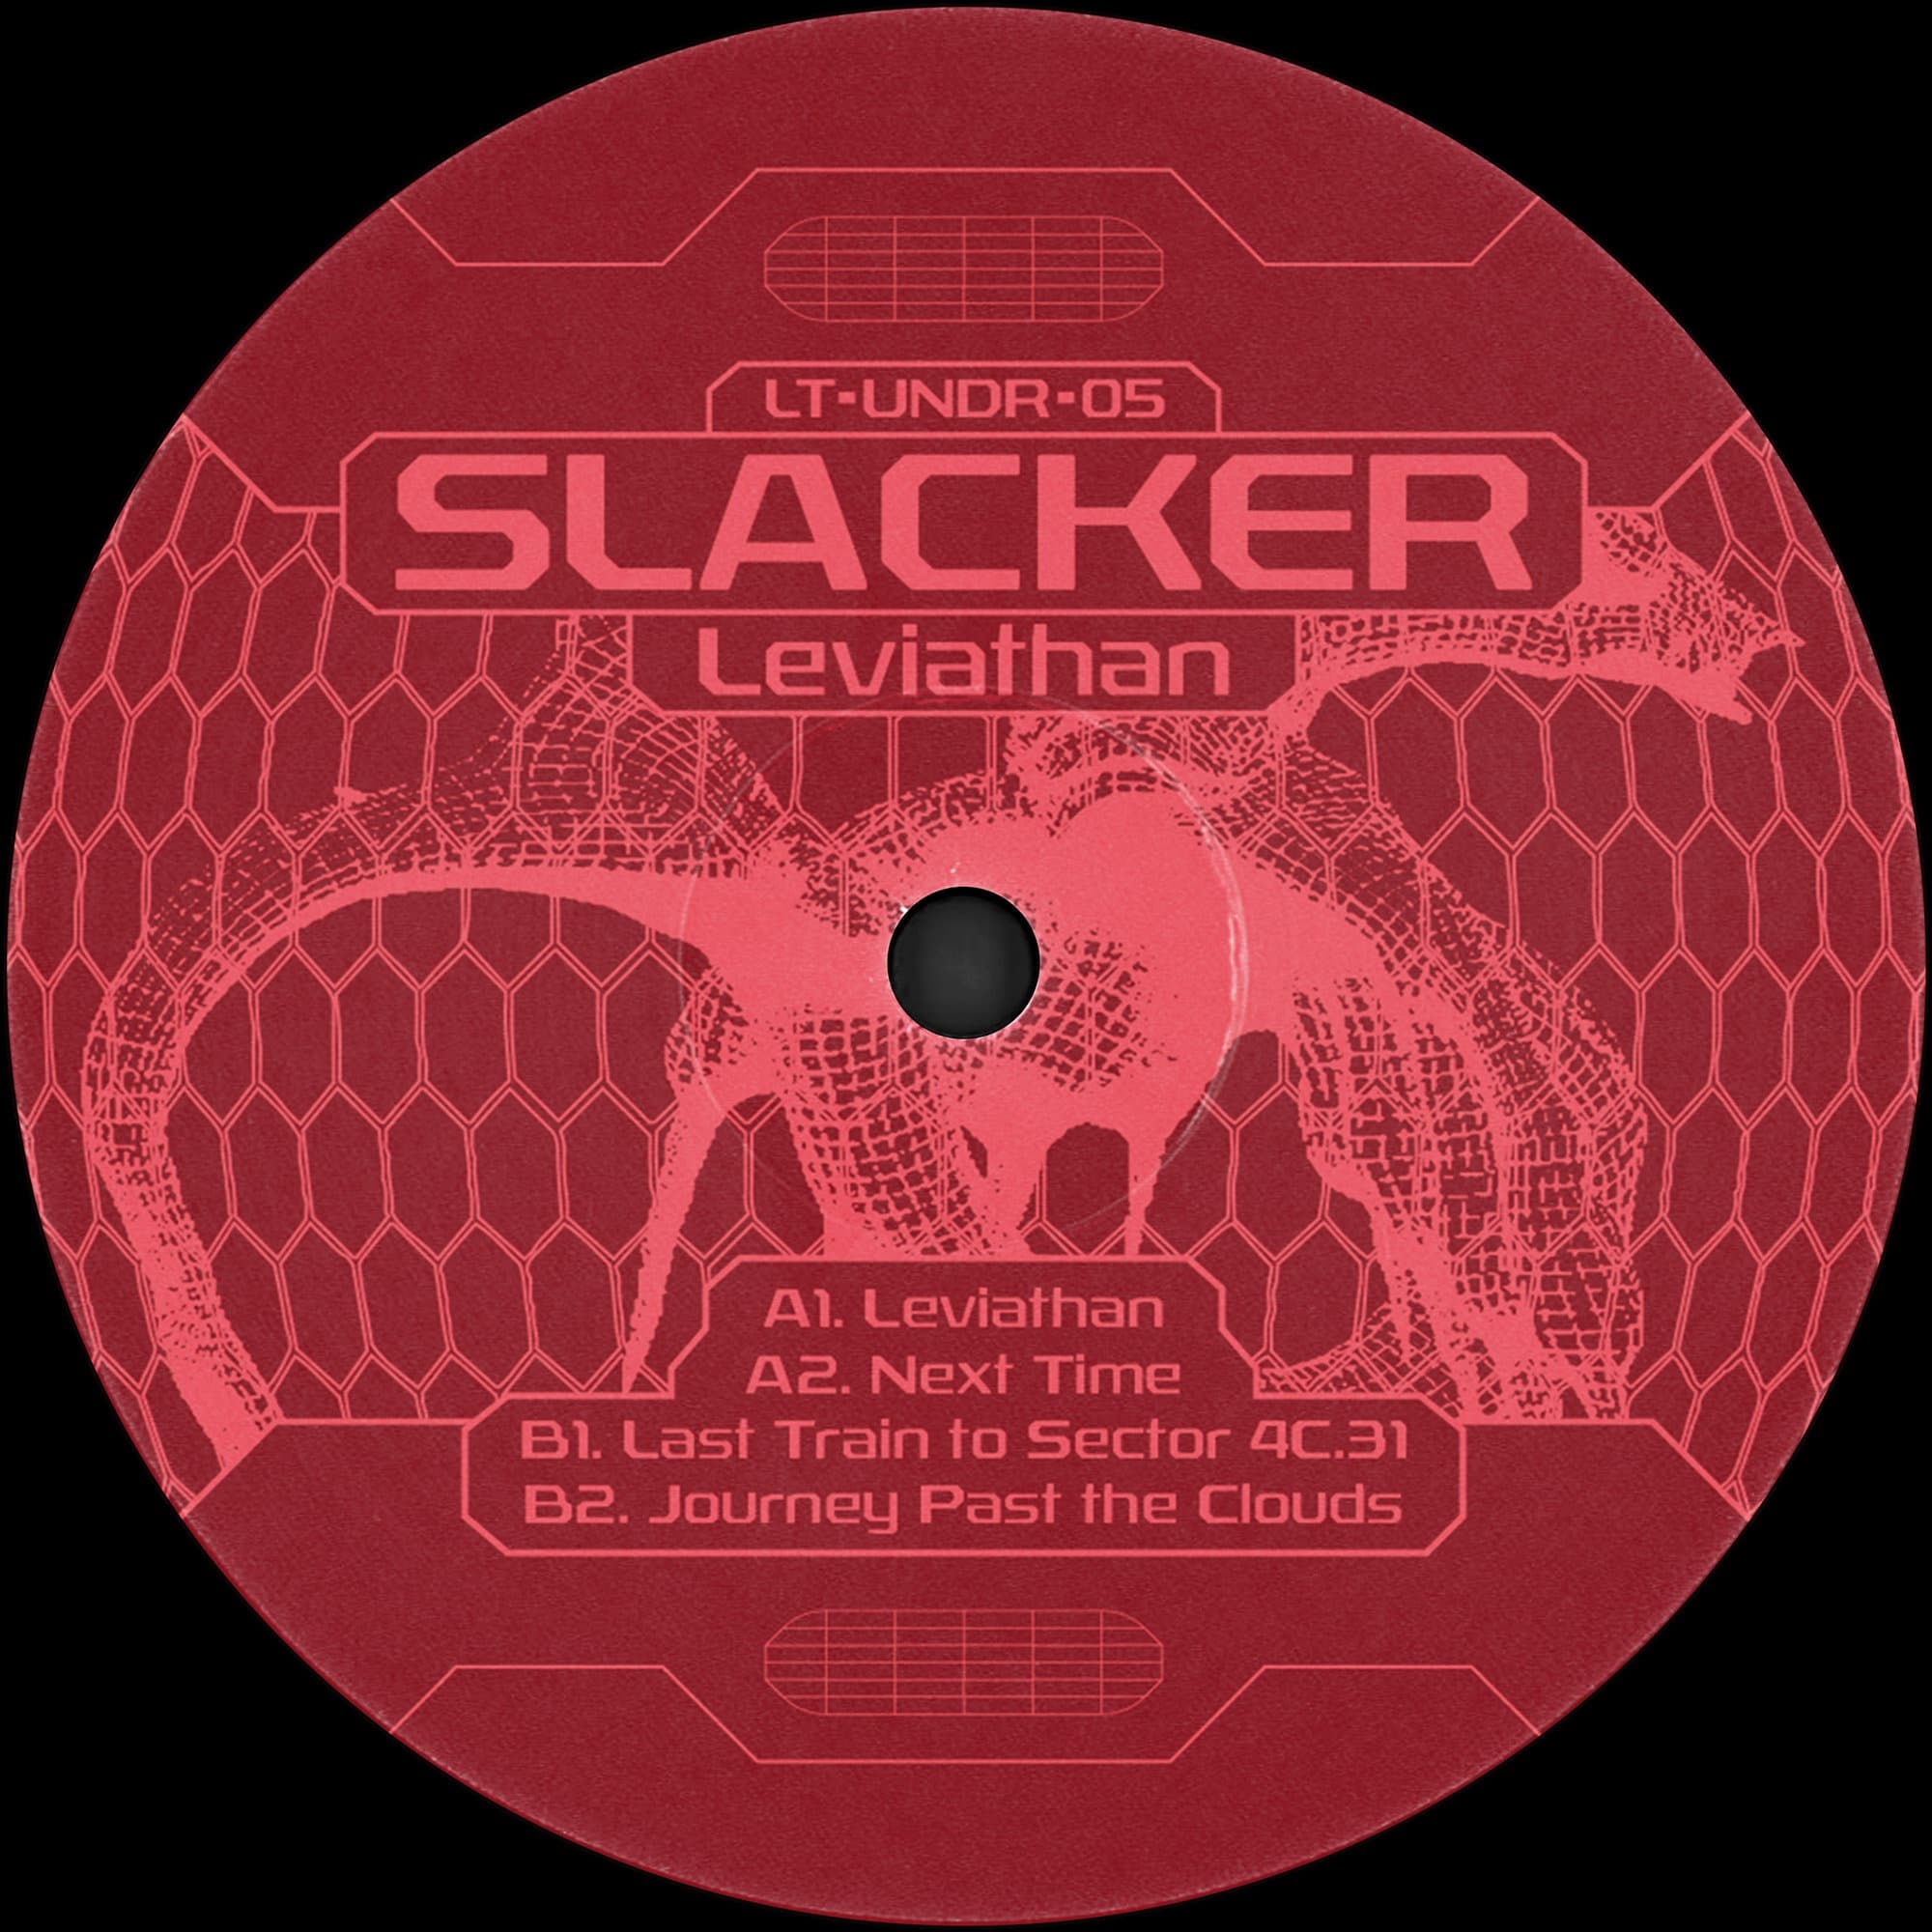 Slacker - Leviathan - LT-UNDR-05 - LOBSTER UNDR